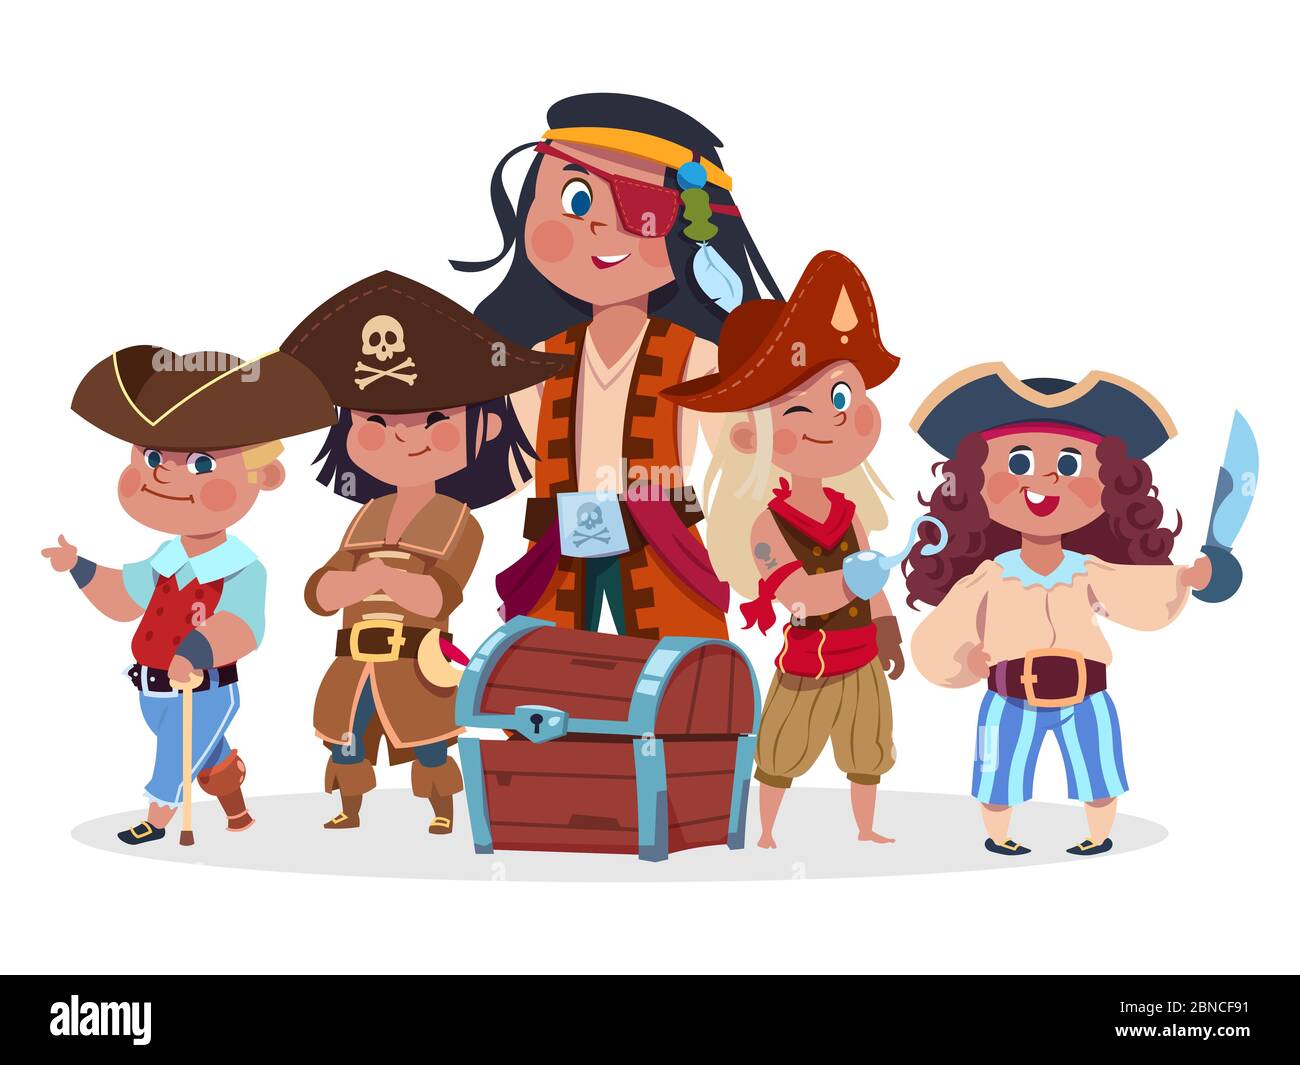 Piraten Kinder Team und Schatzkiste Vektor isoliert auf weißem Hintergrund. Crew von Piraten, Freibeuter Charakter mit Brustbild Stock Vektor